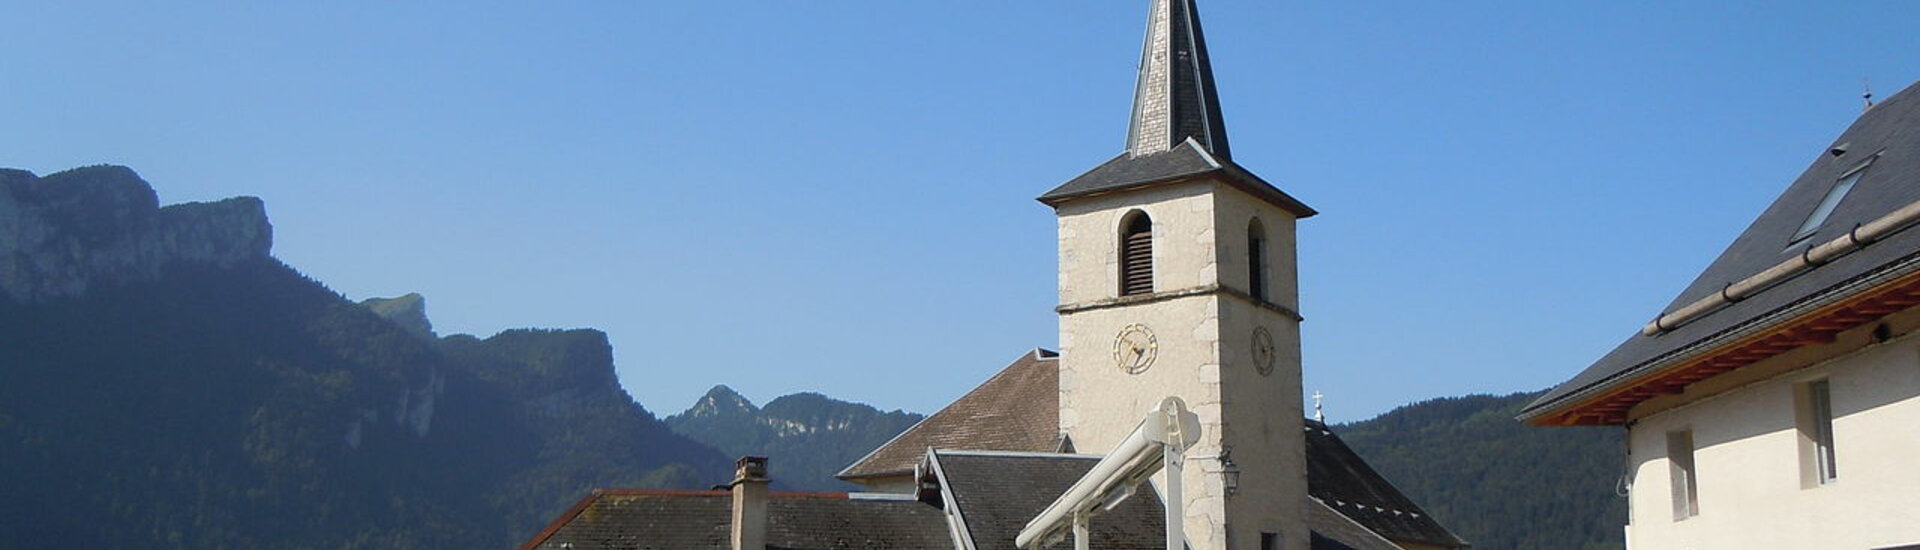 Commune de Corbel - Chartreuse - Savoie